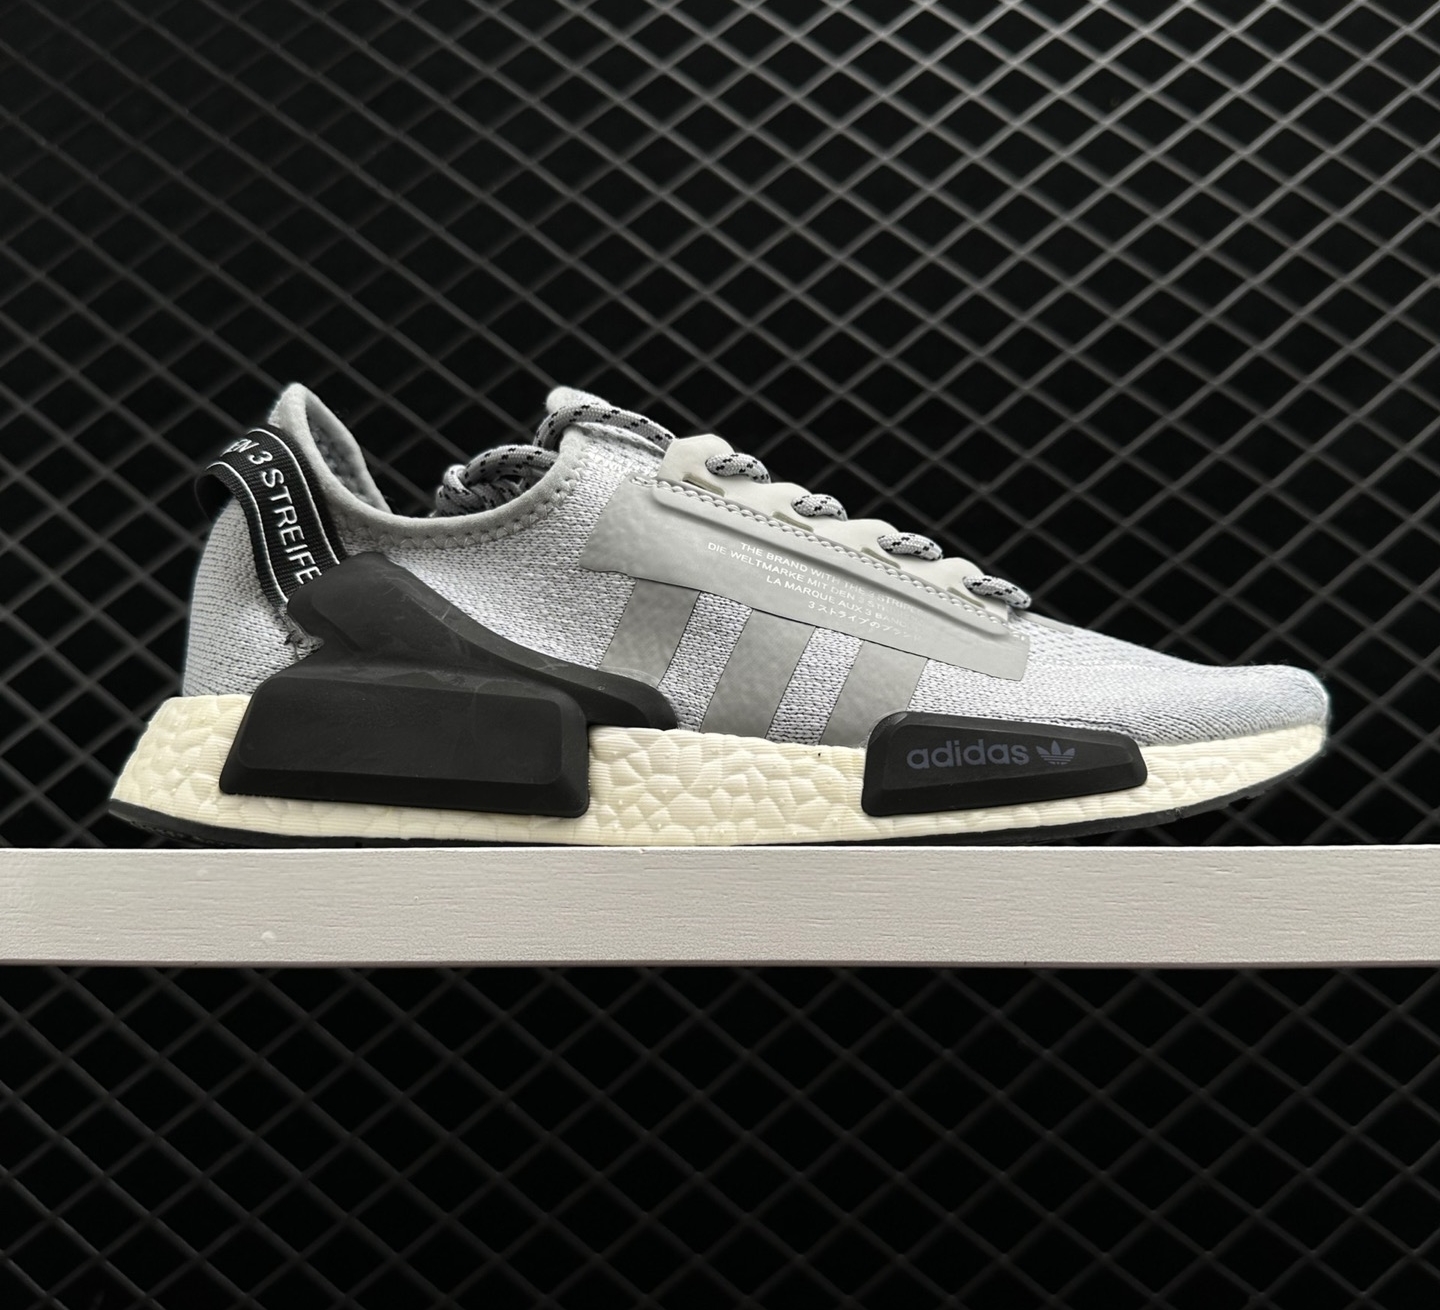 Adidas NMD_R1 V2 Gray Black - Sleek and Stylish Footwear